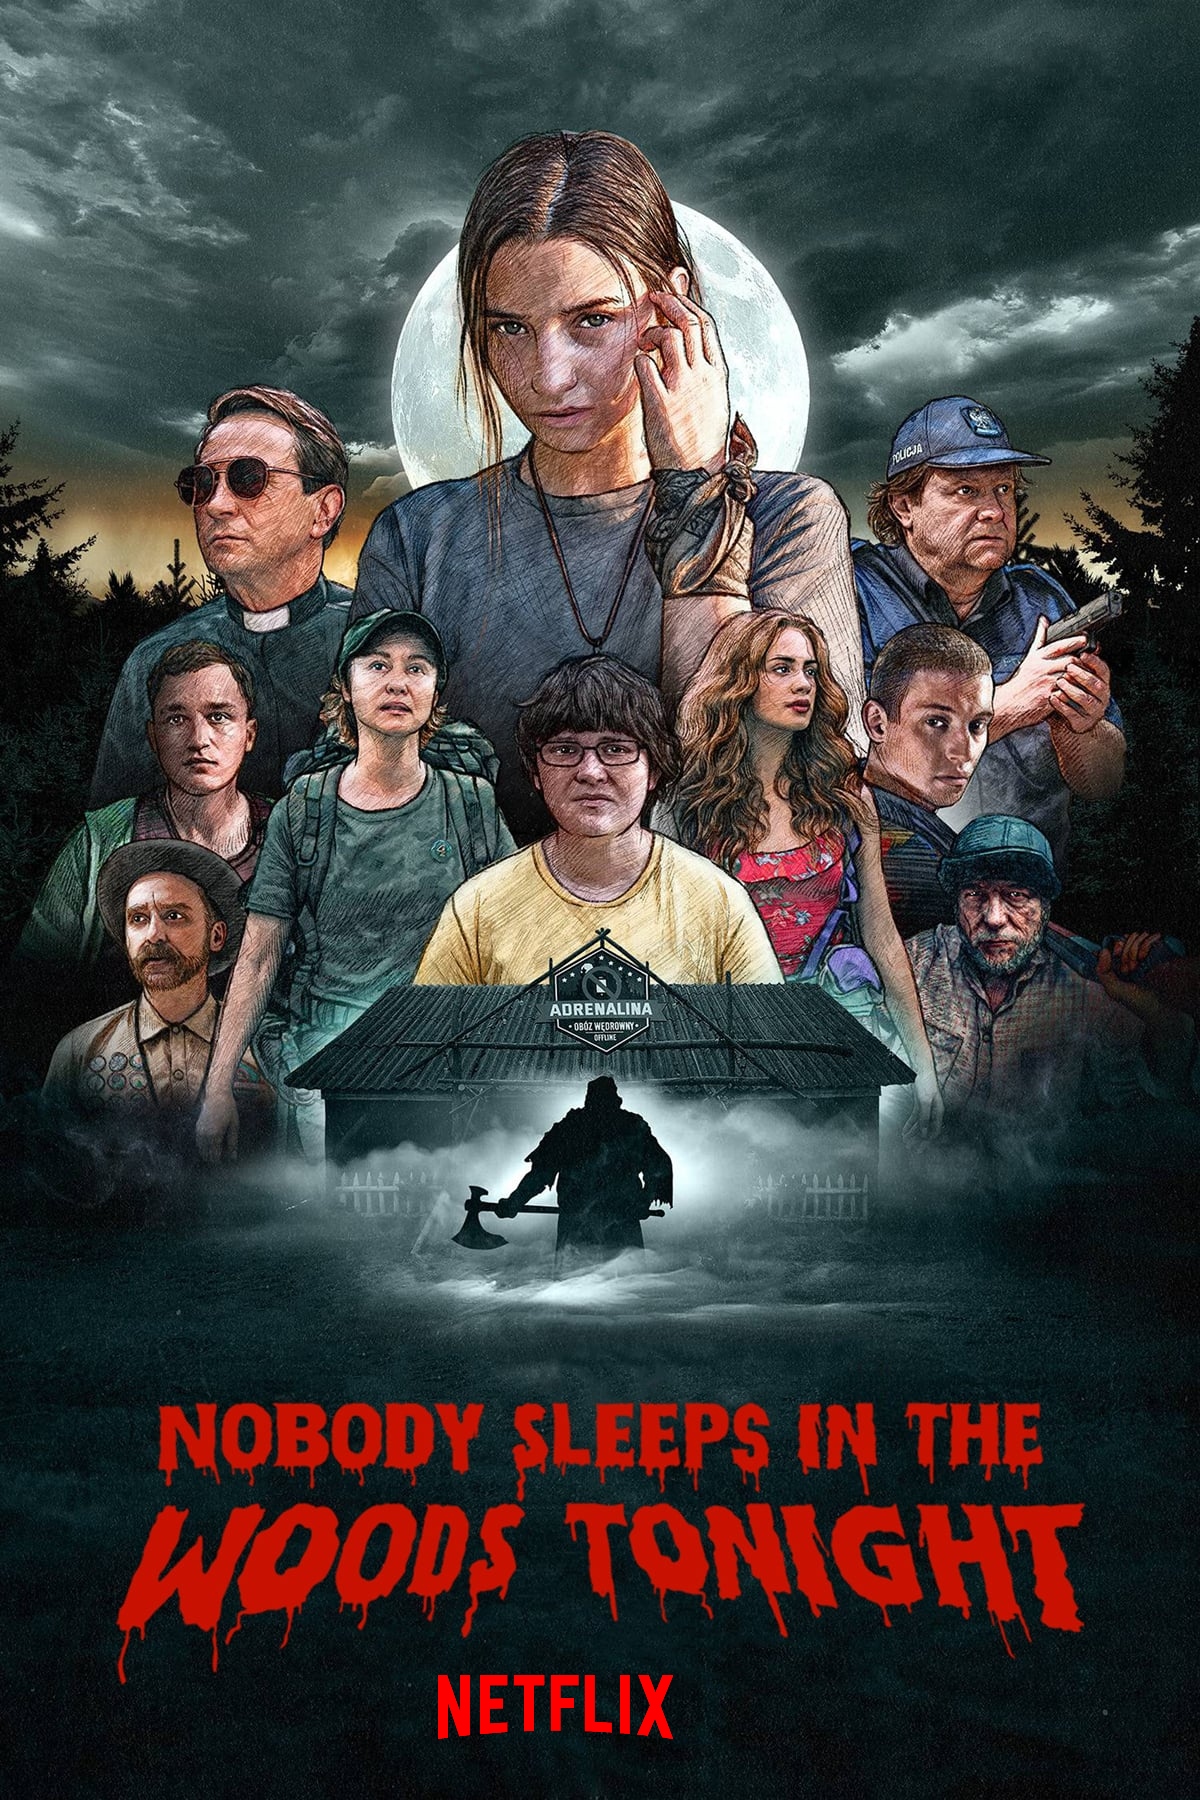 Is Nobody Sleeps in the Woods Tonight 2 on Netflix